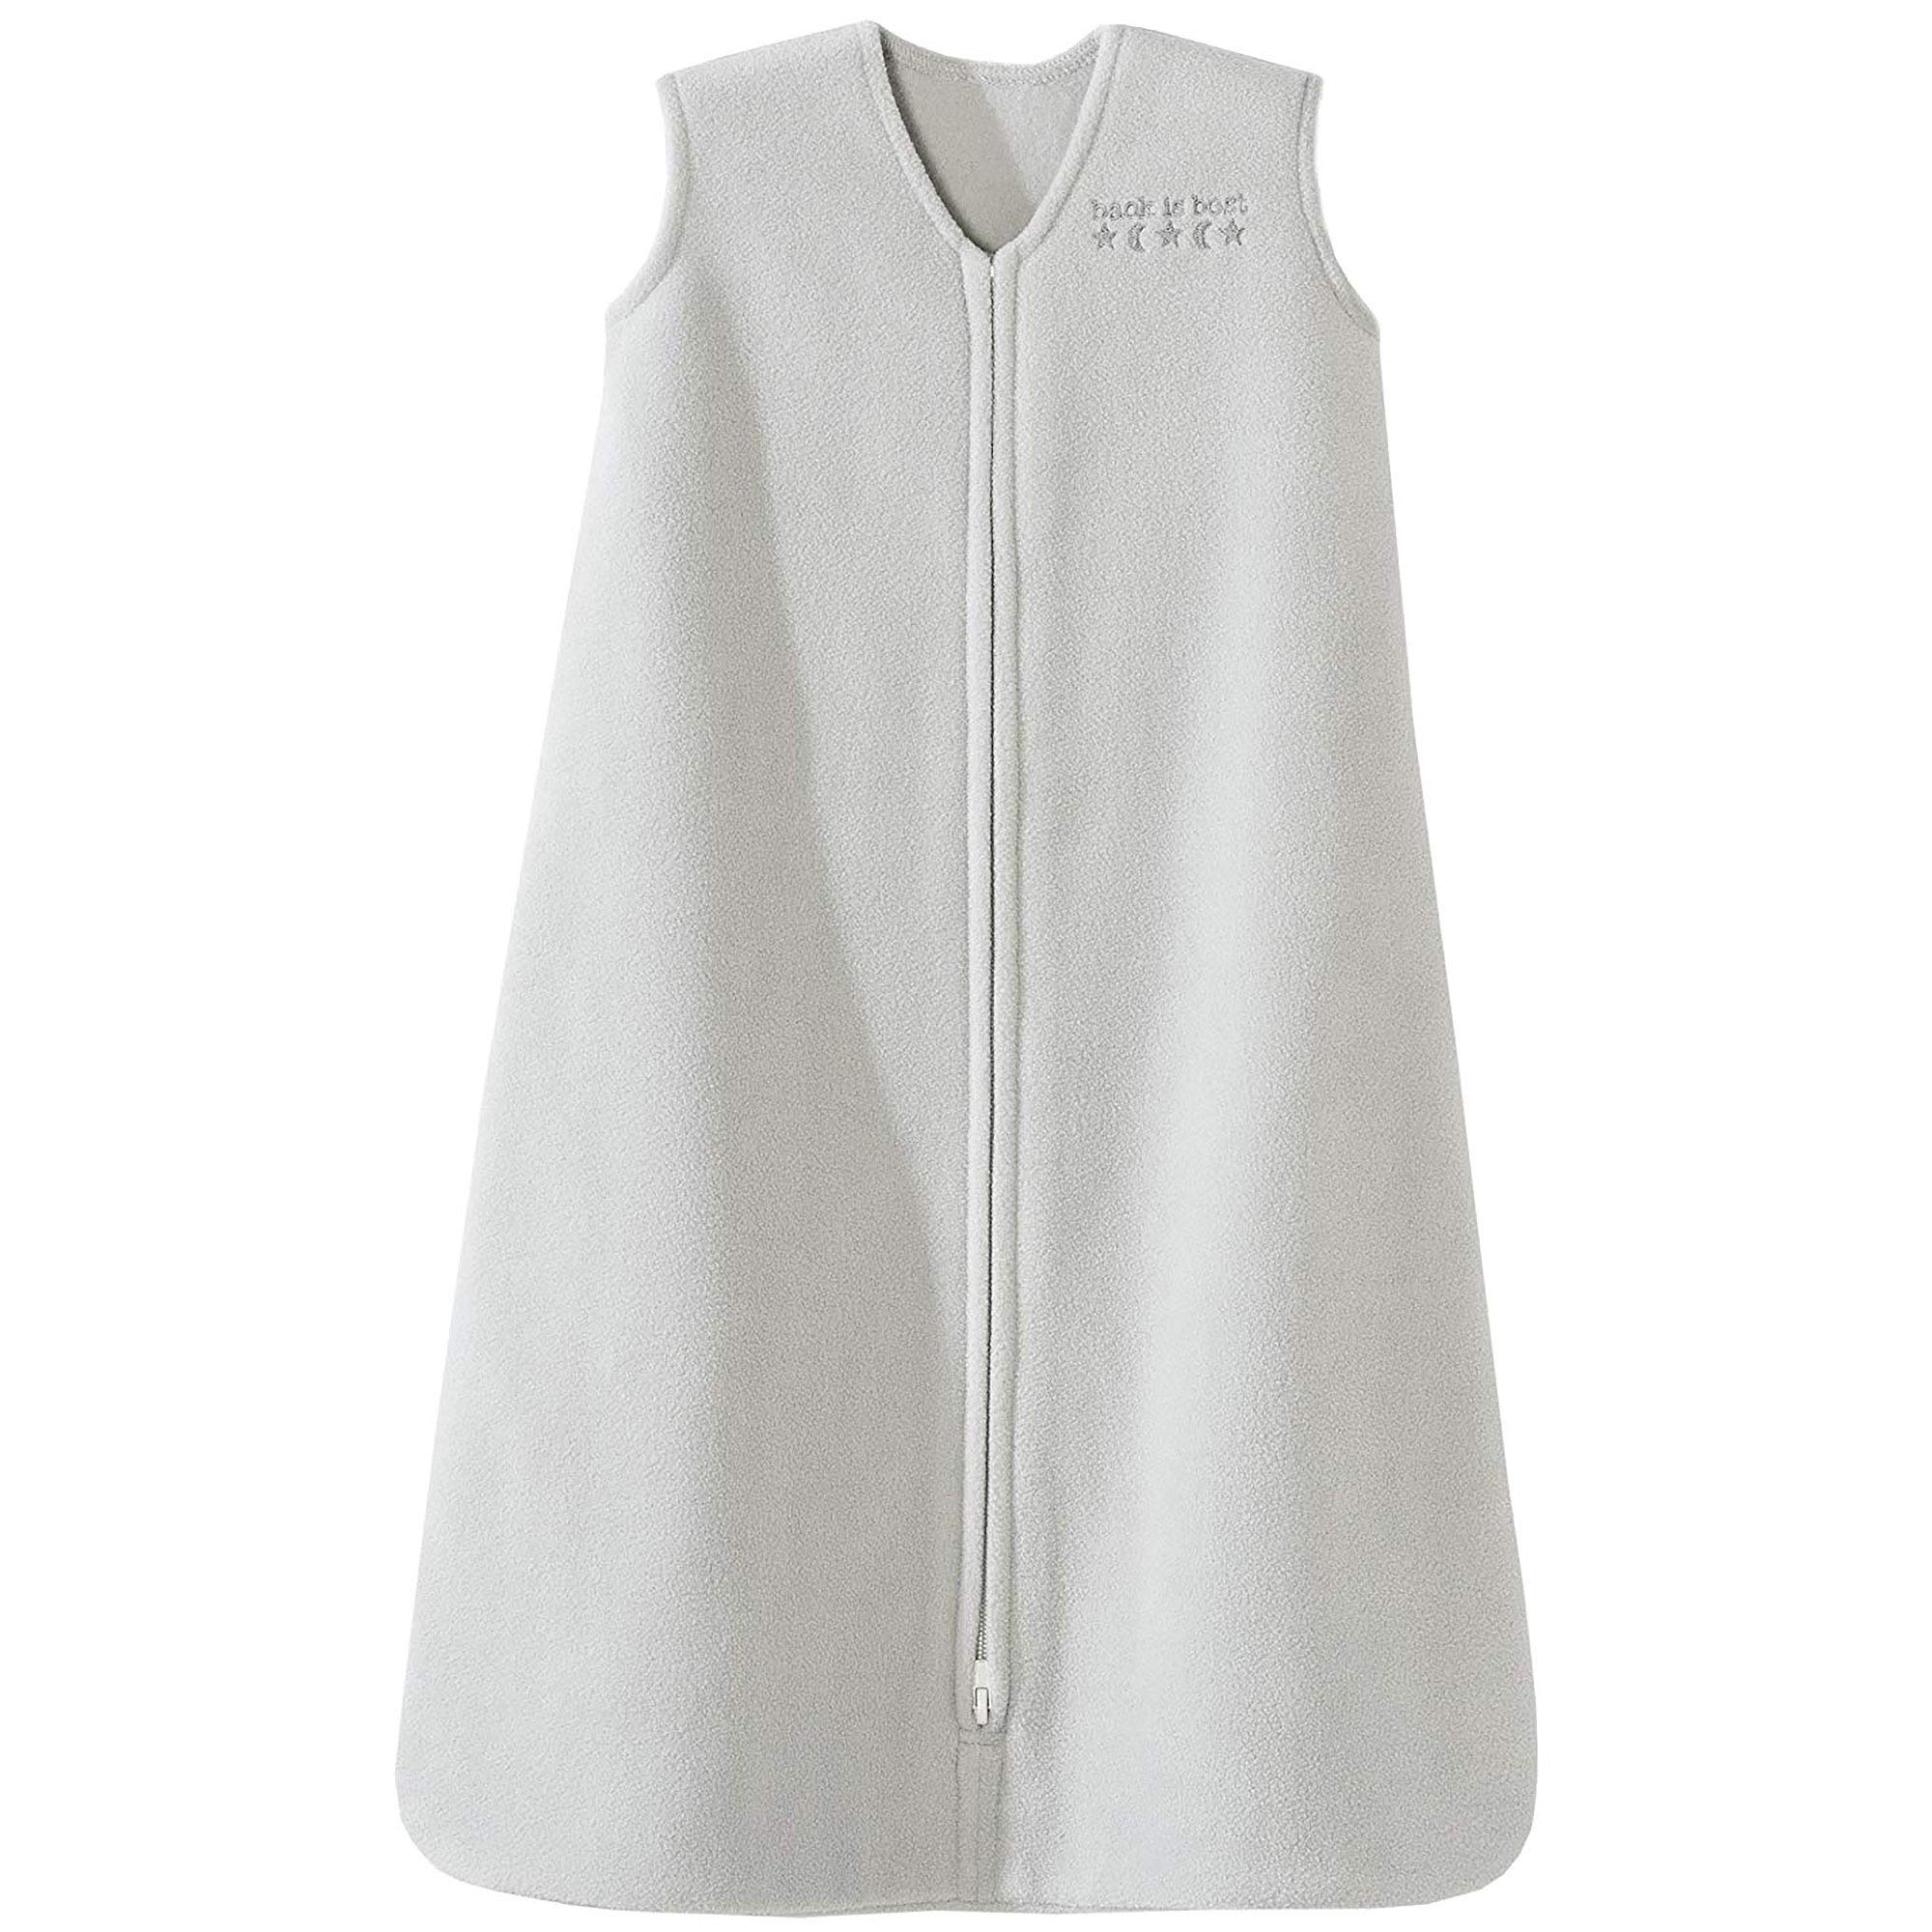 HALO Sleepsack Micro-Fleece Wearable Blanket, TOG 1.0, Grey, Large